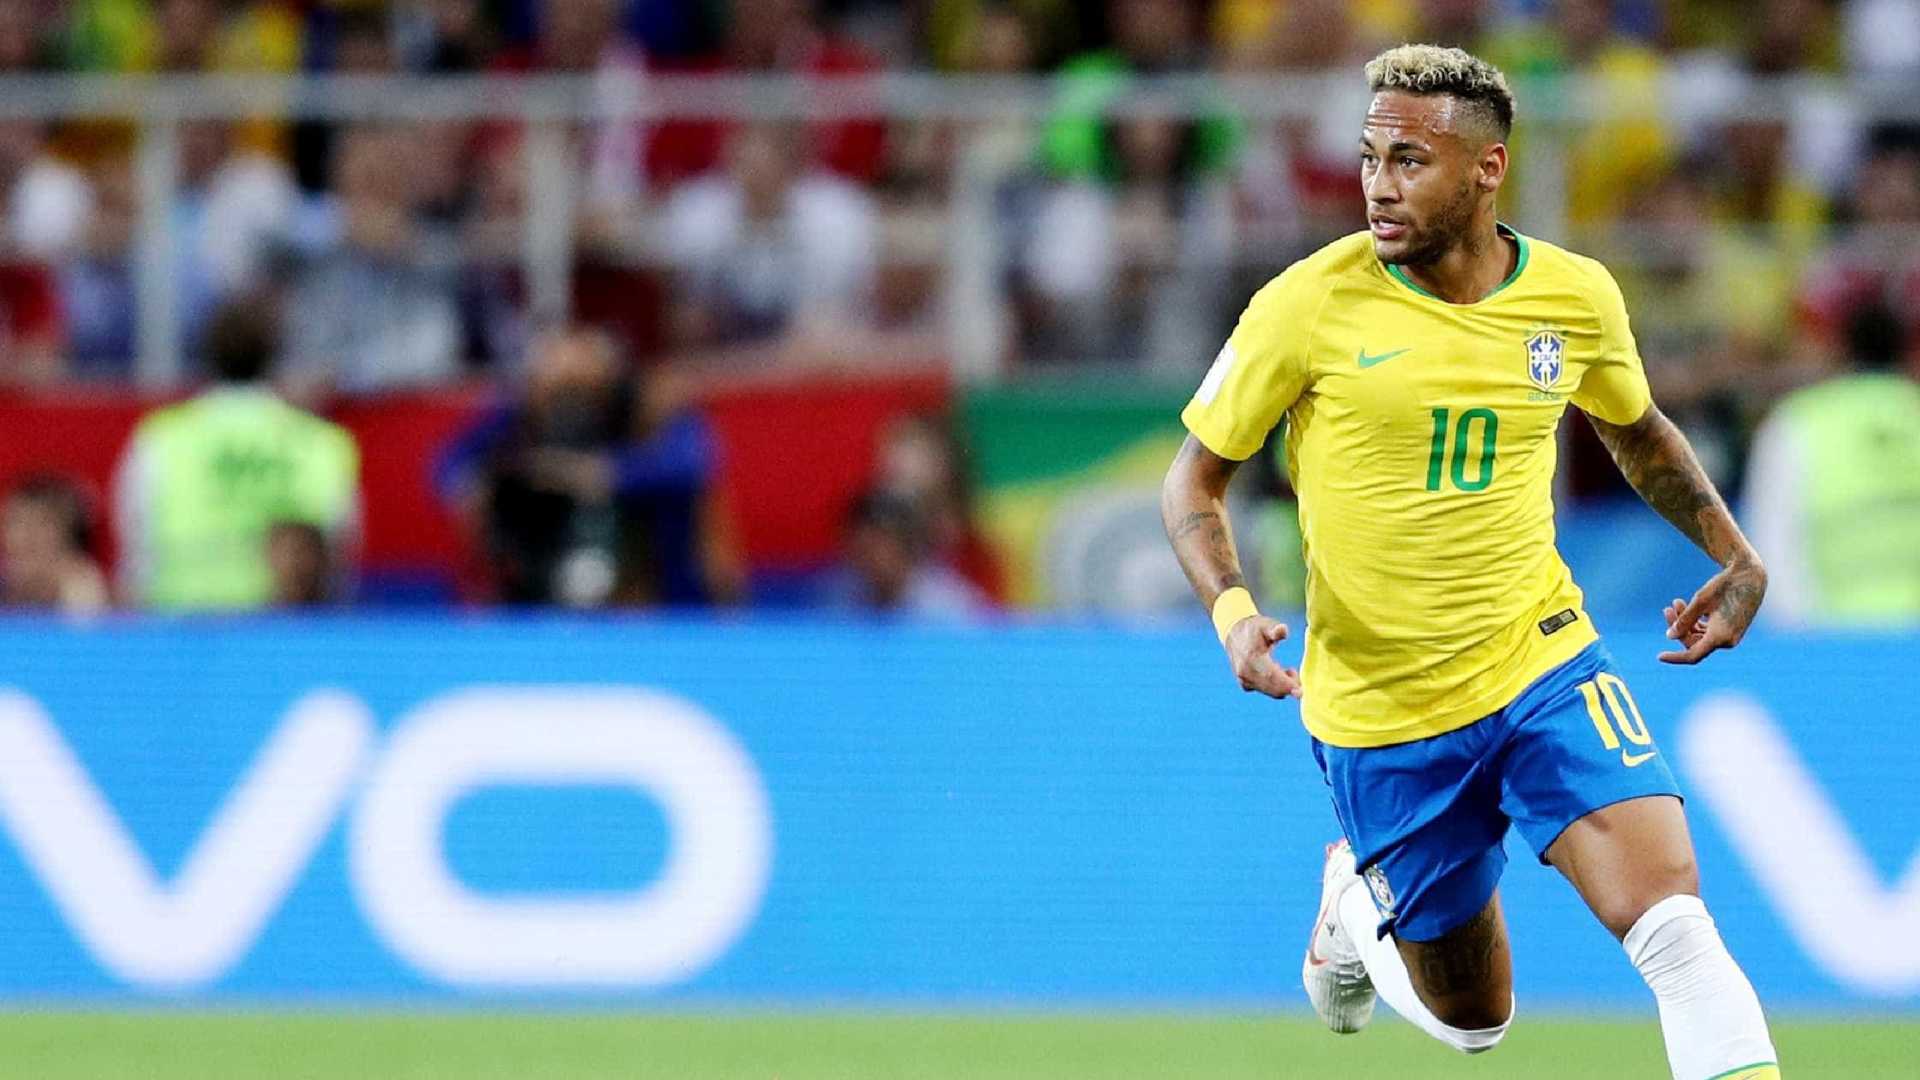 Brasil encara Estados Unidos com Neymar como capitão